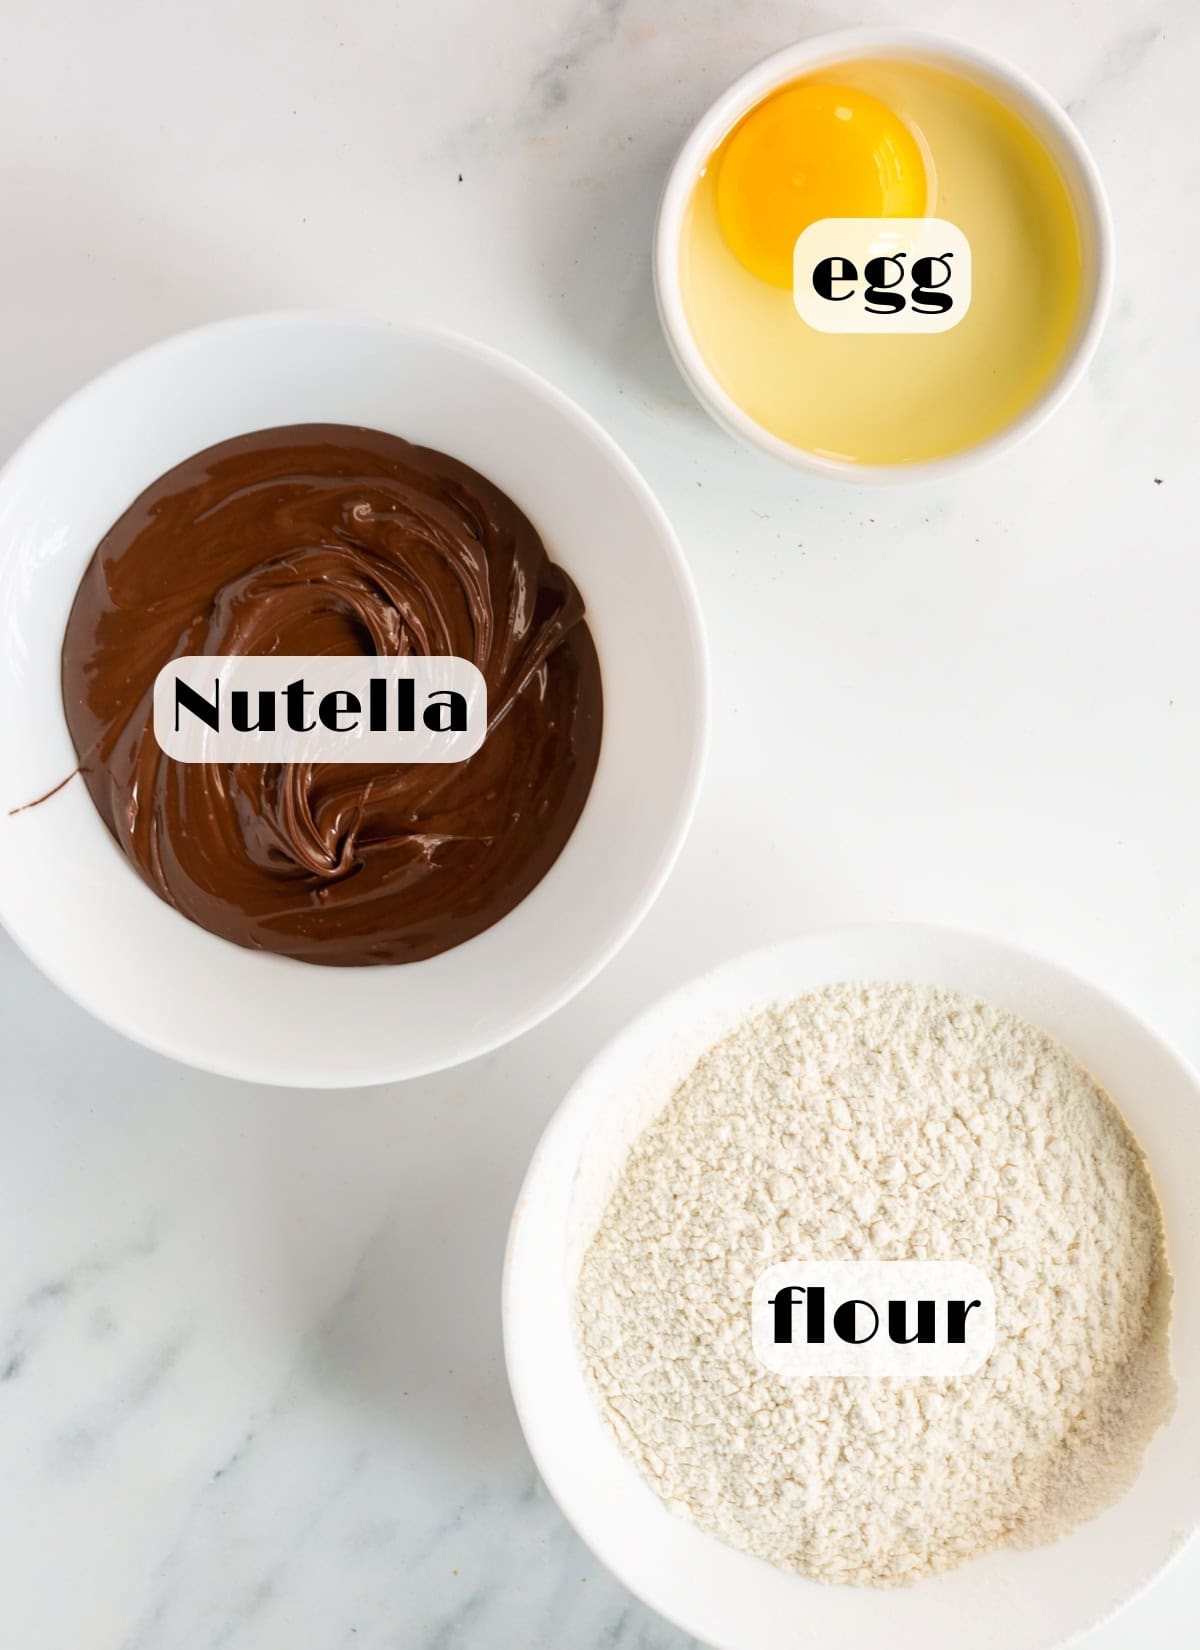 nutella cookies ingredients: nutella, flour, egg.